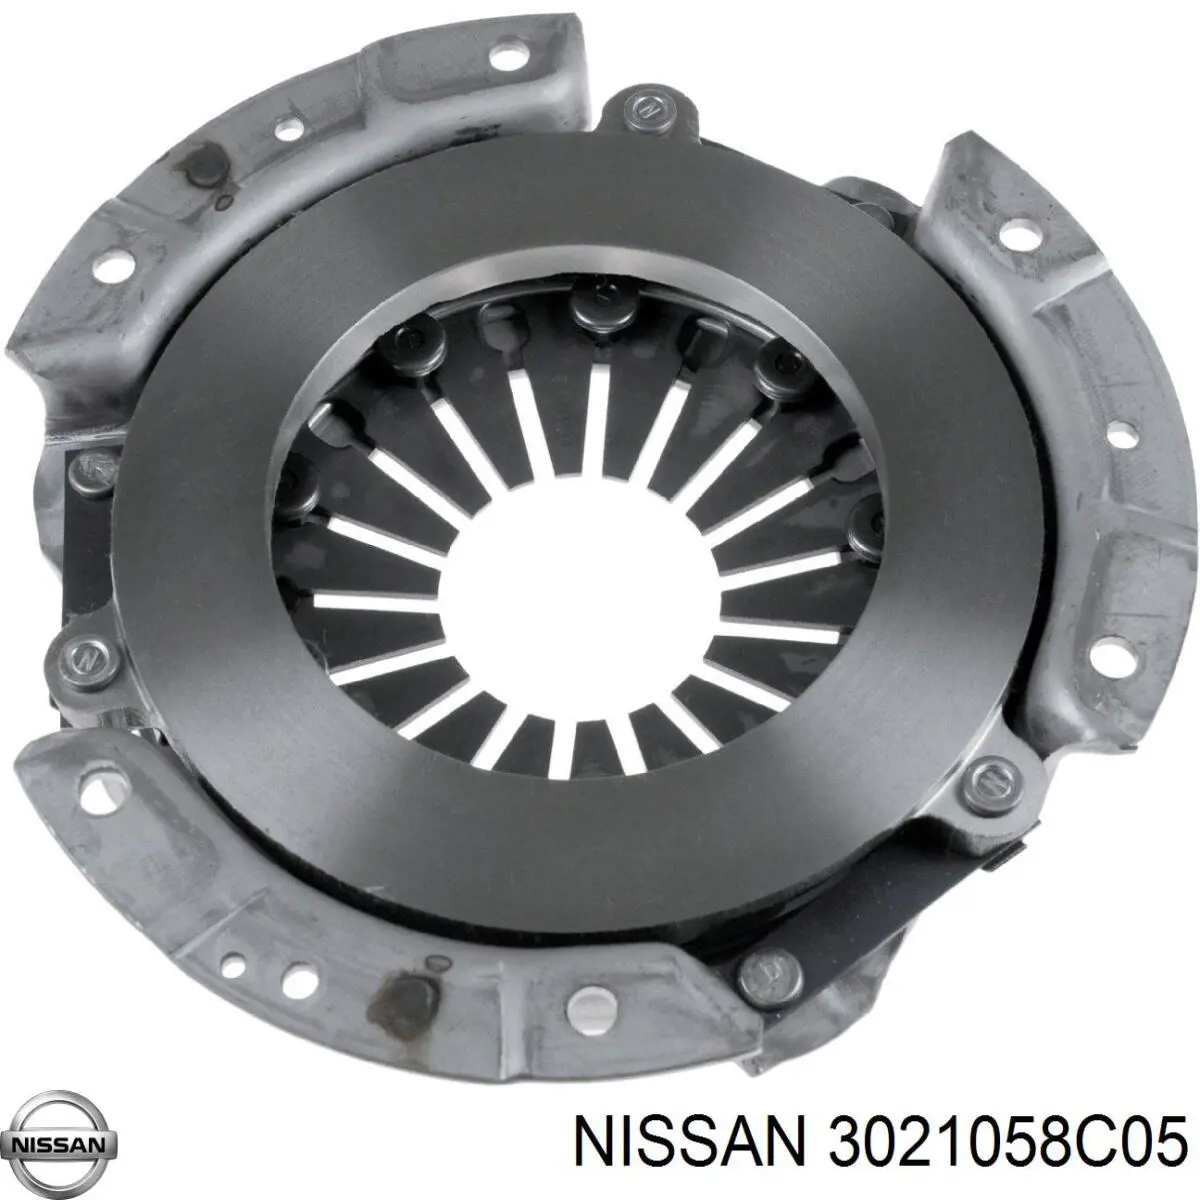 Plato de presión del embrague para Nissan Sunny (140Y, 150Y)